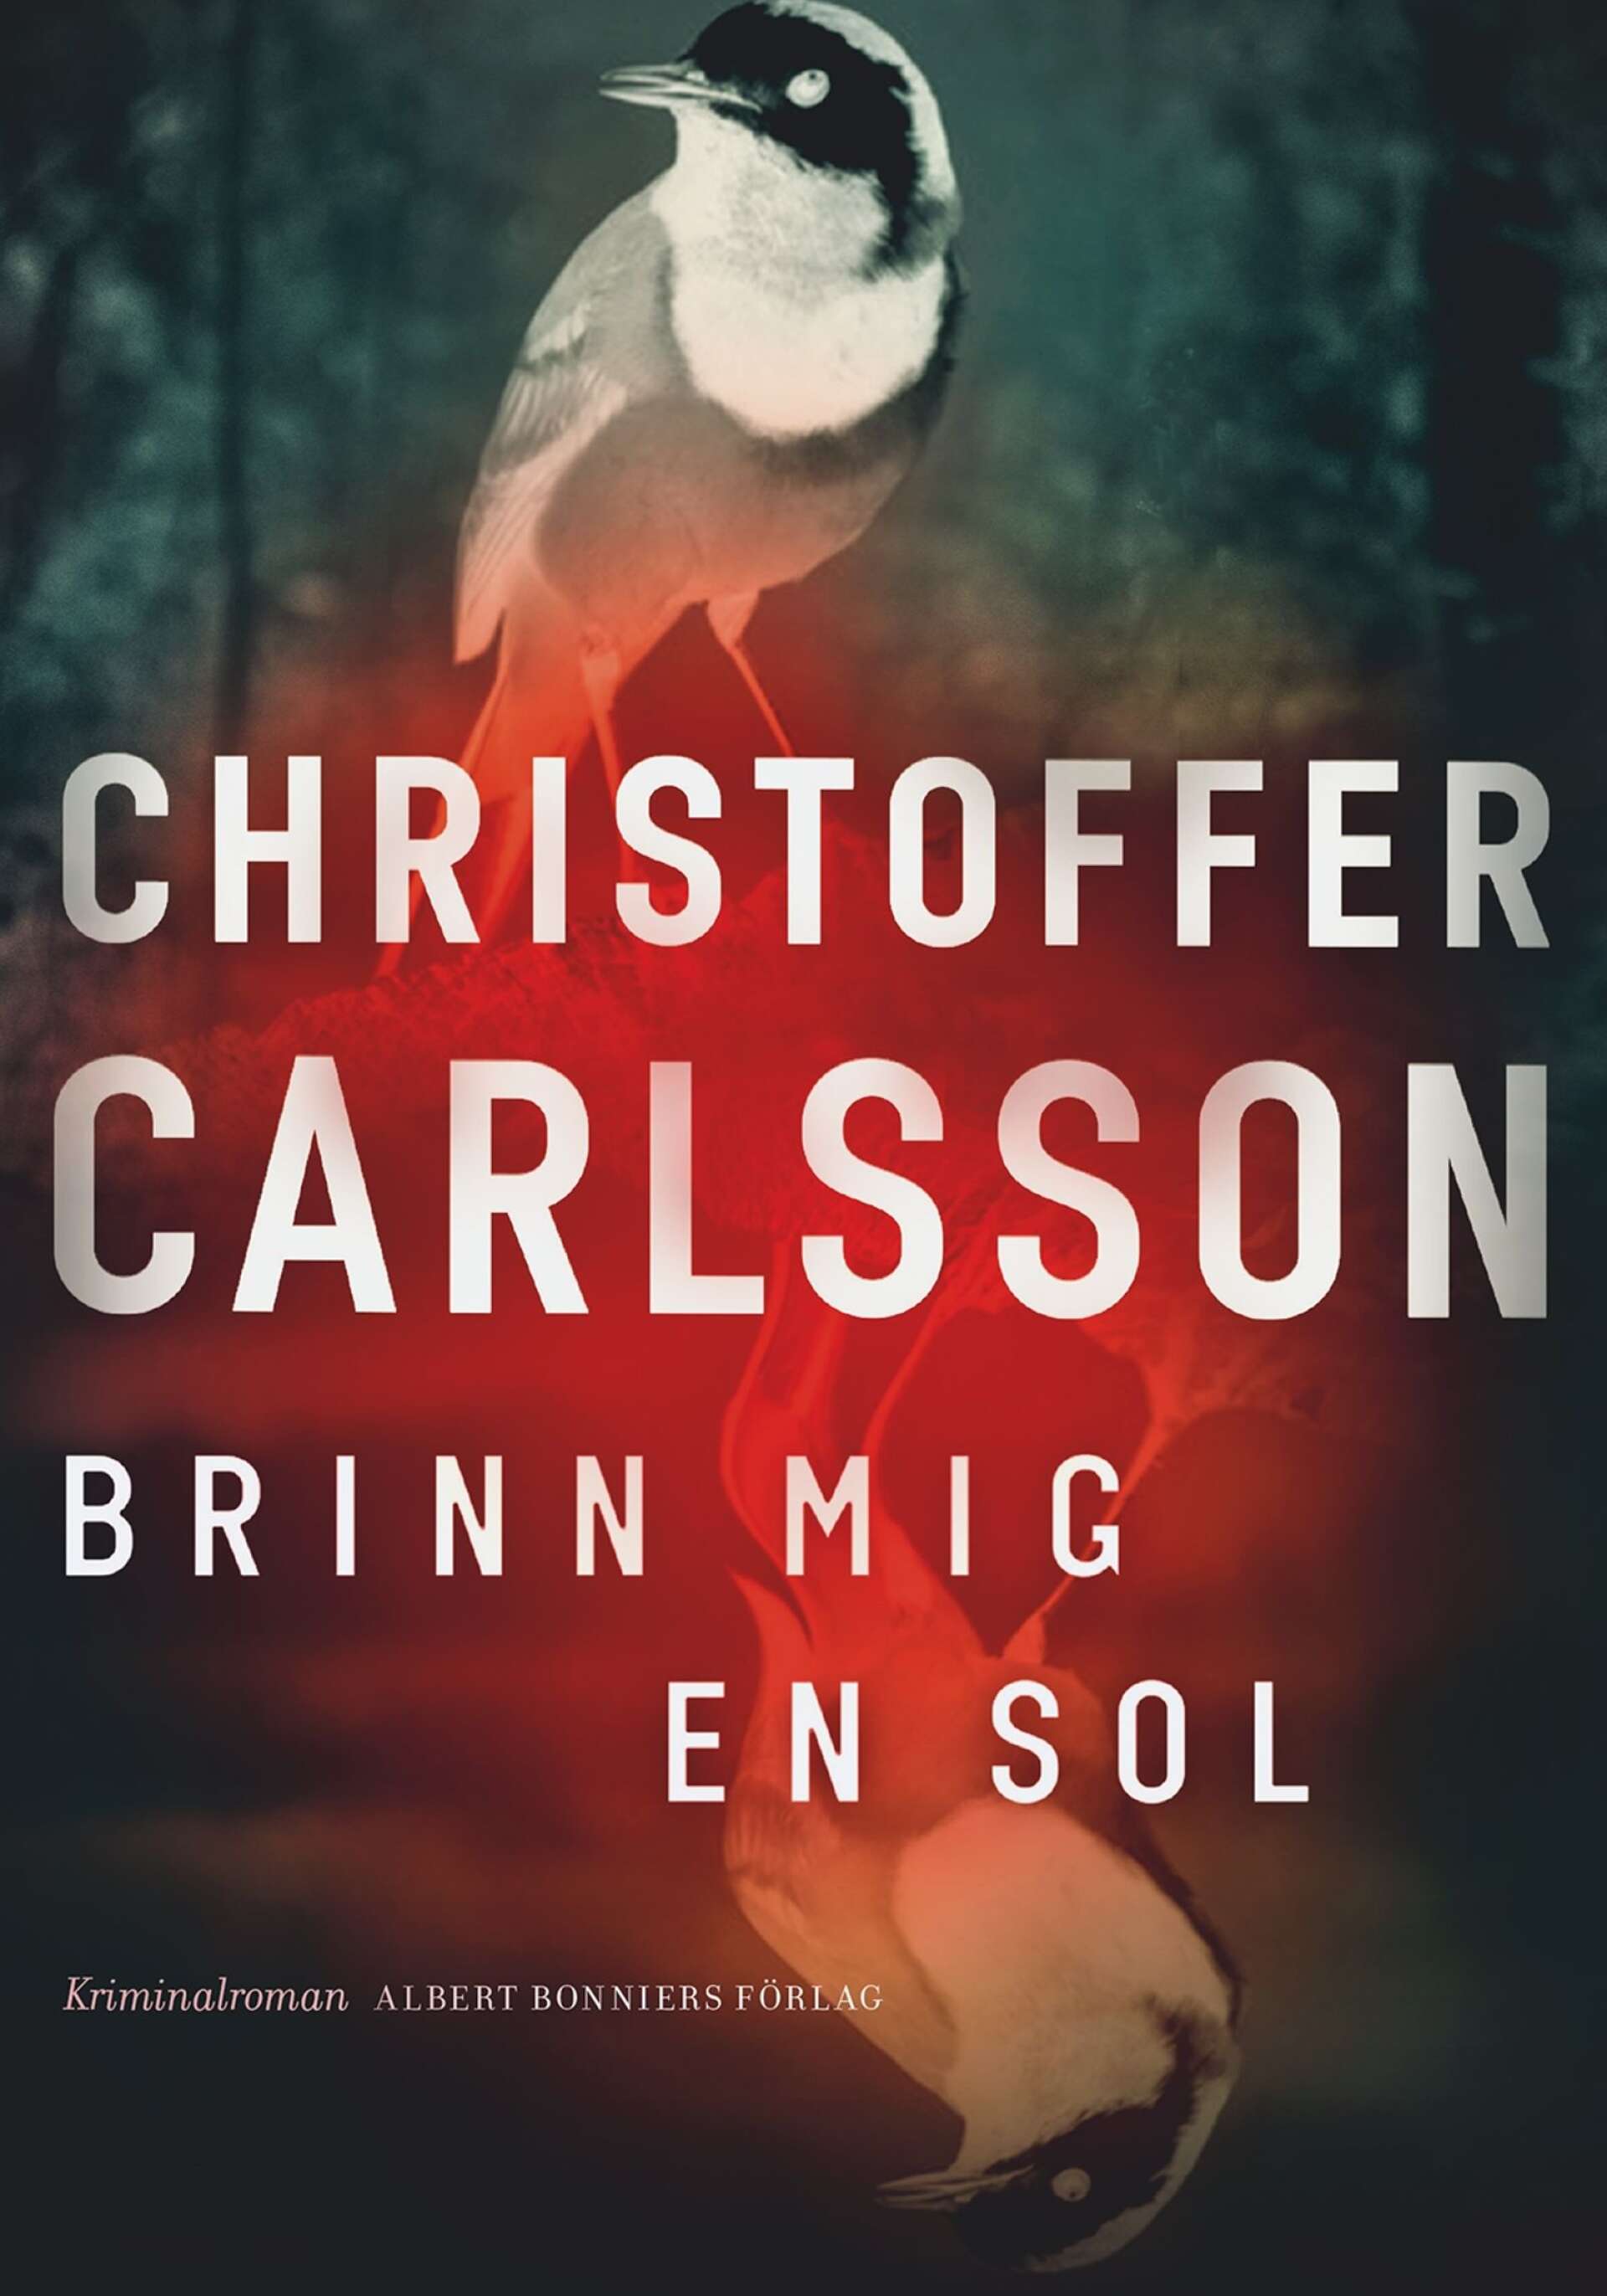 Brinn mig en sol av Christoffer Carlsson.